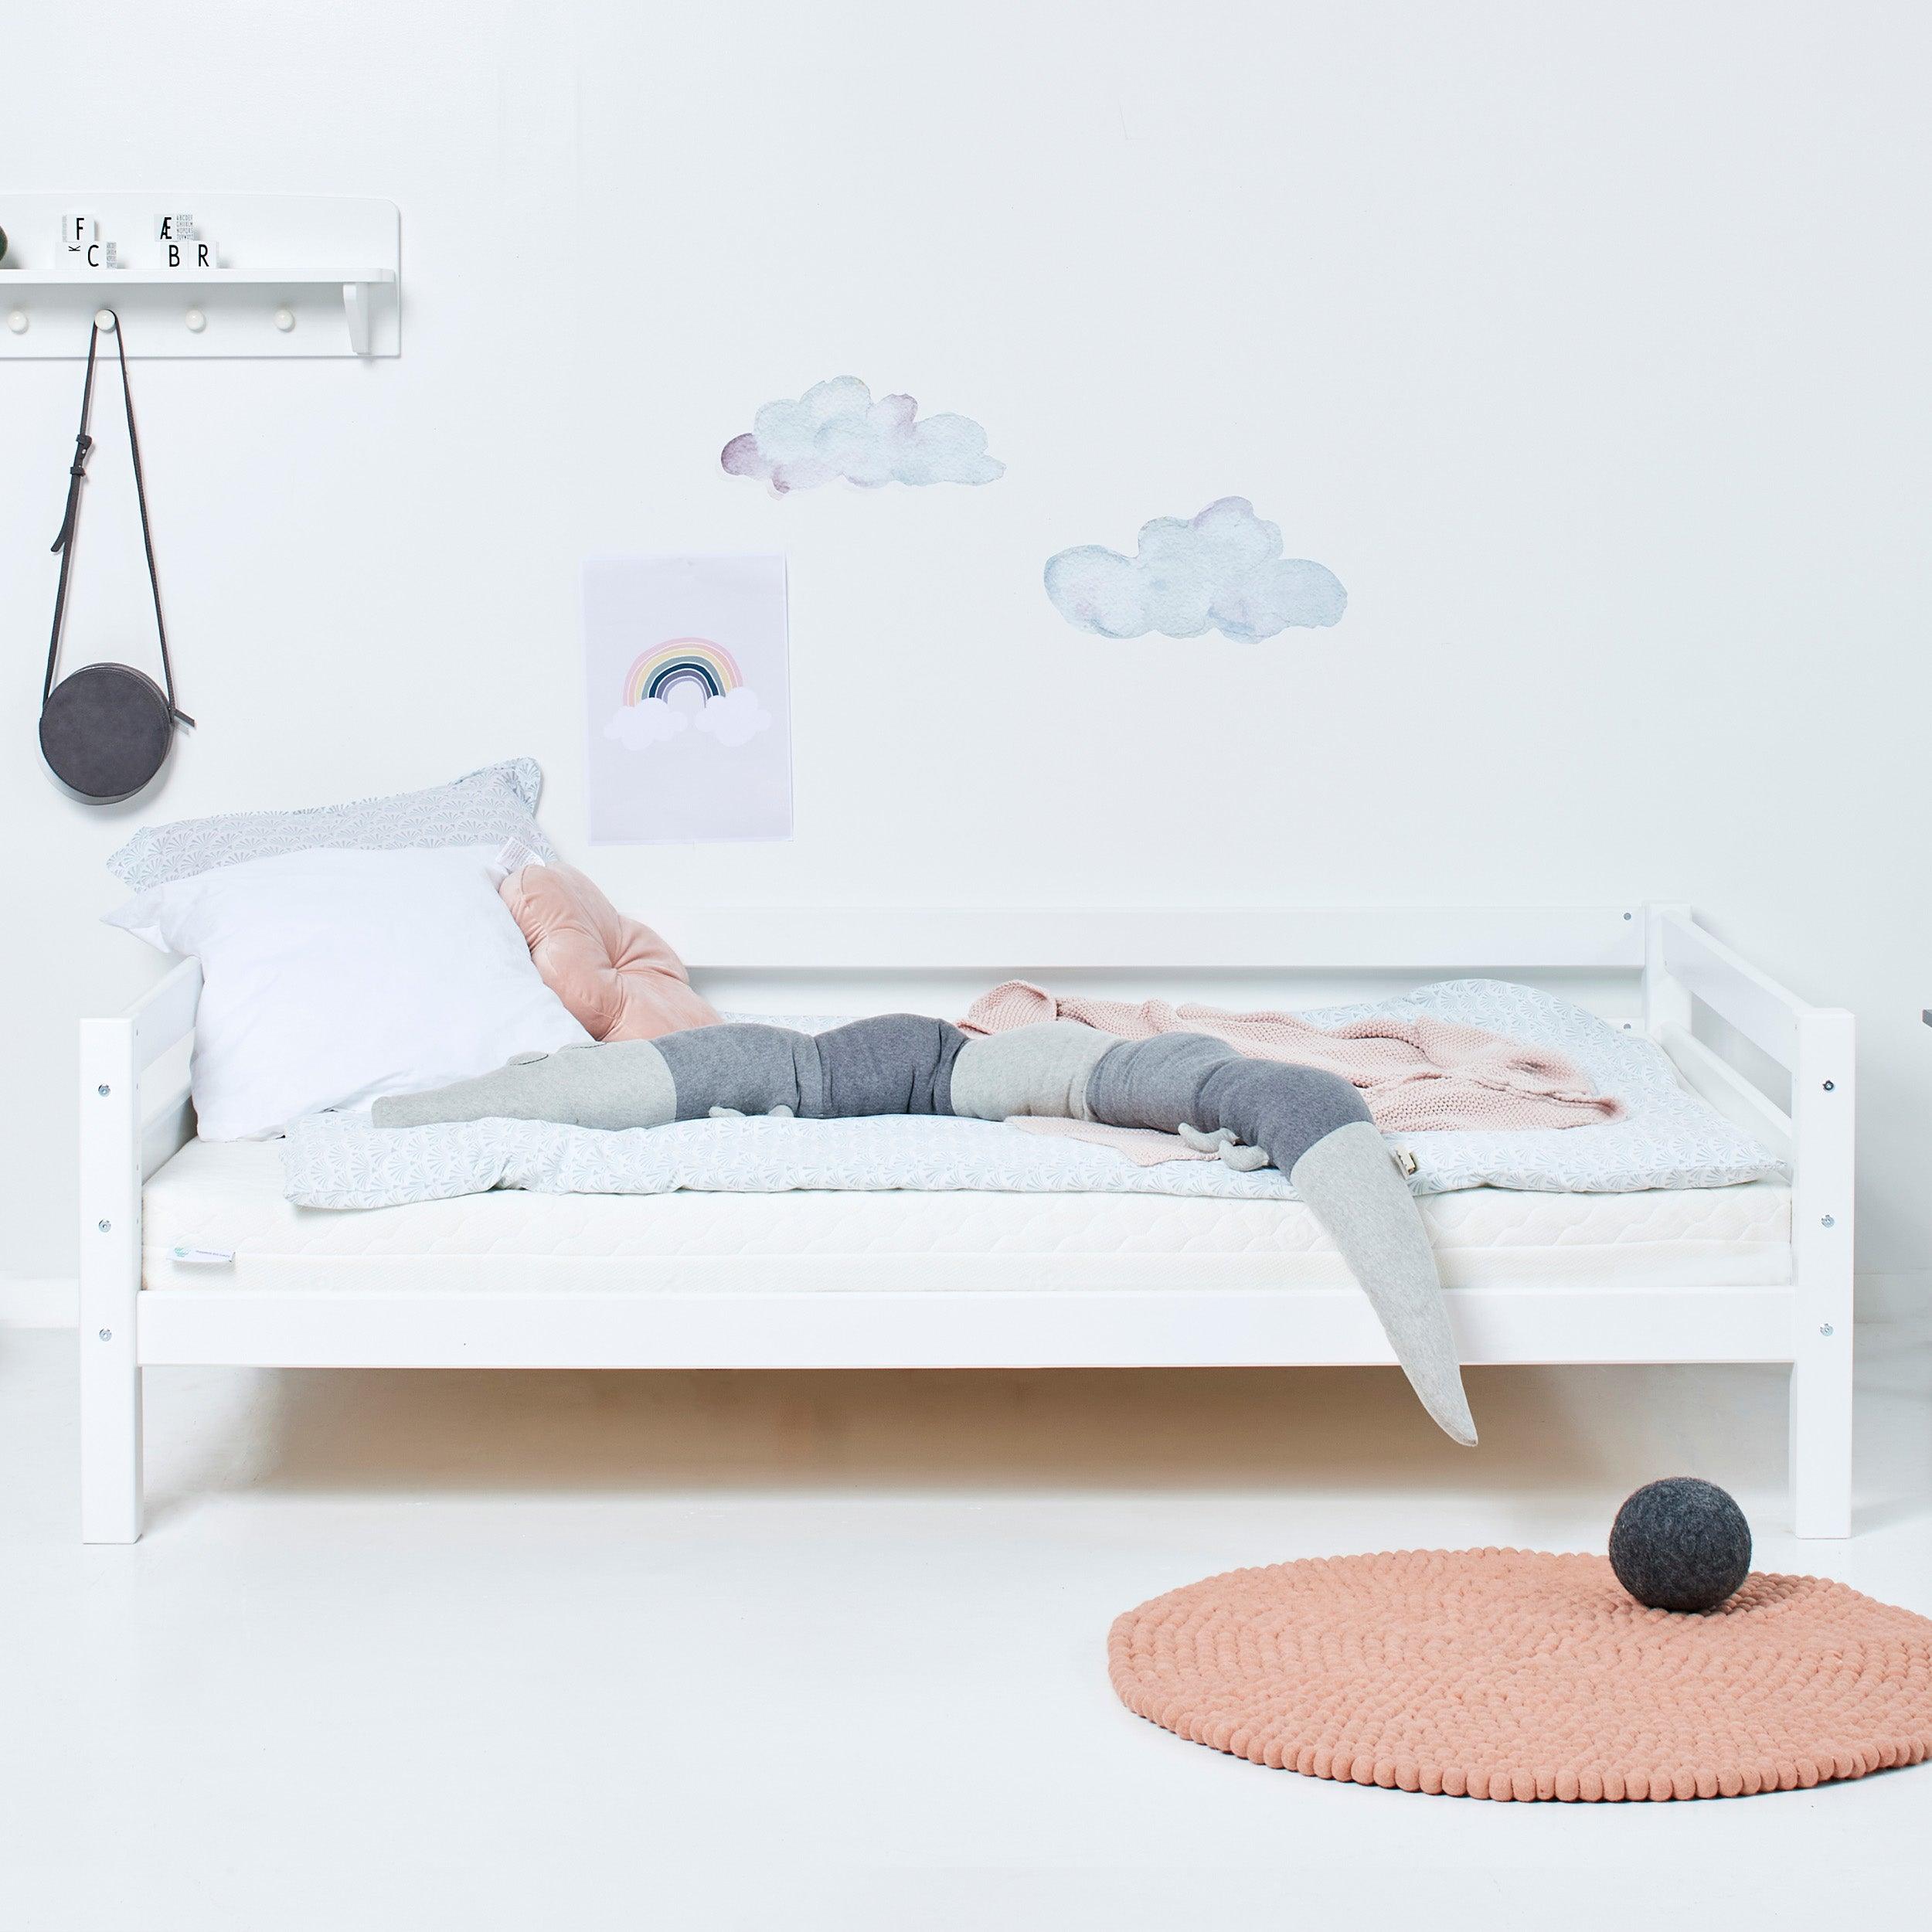 Hoppekids ECO Luxury Full-length bed rail for 70x160cm beds, White